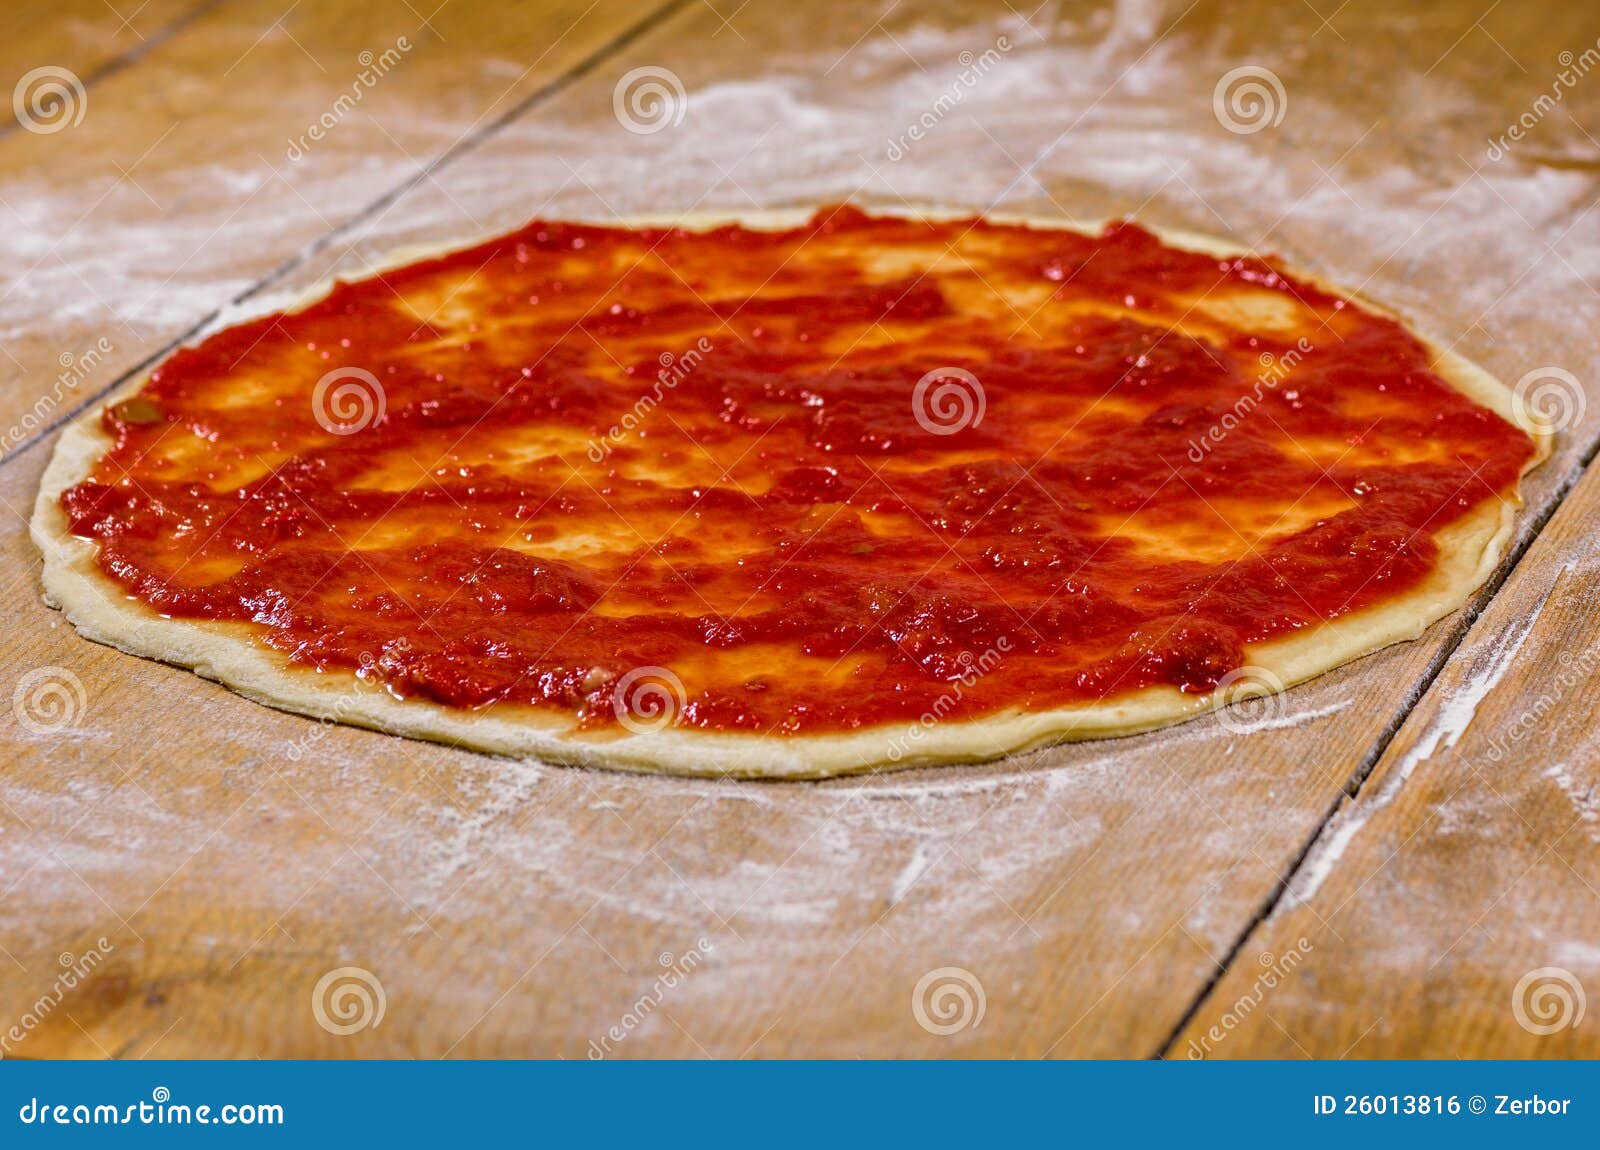 из чего делают черное тесто на пиццу фото 73